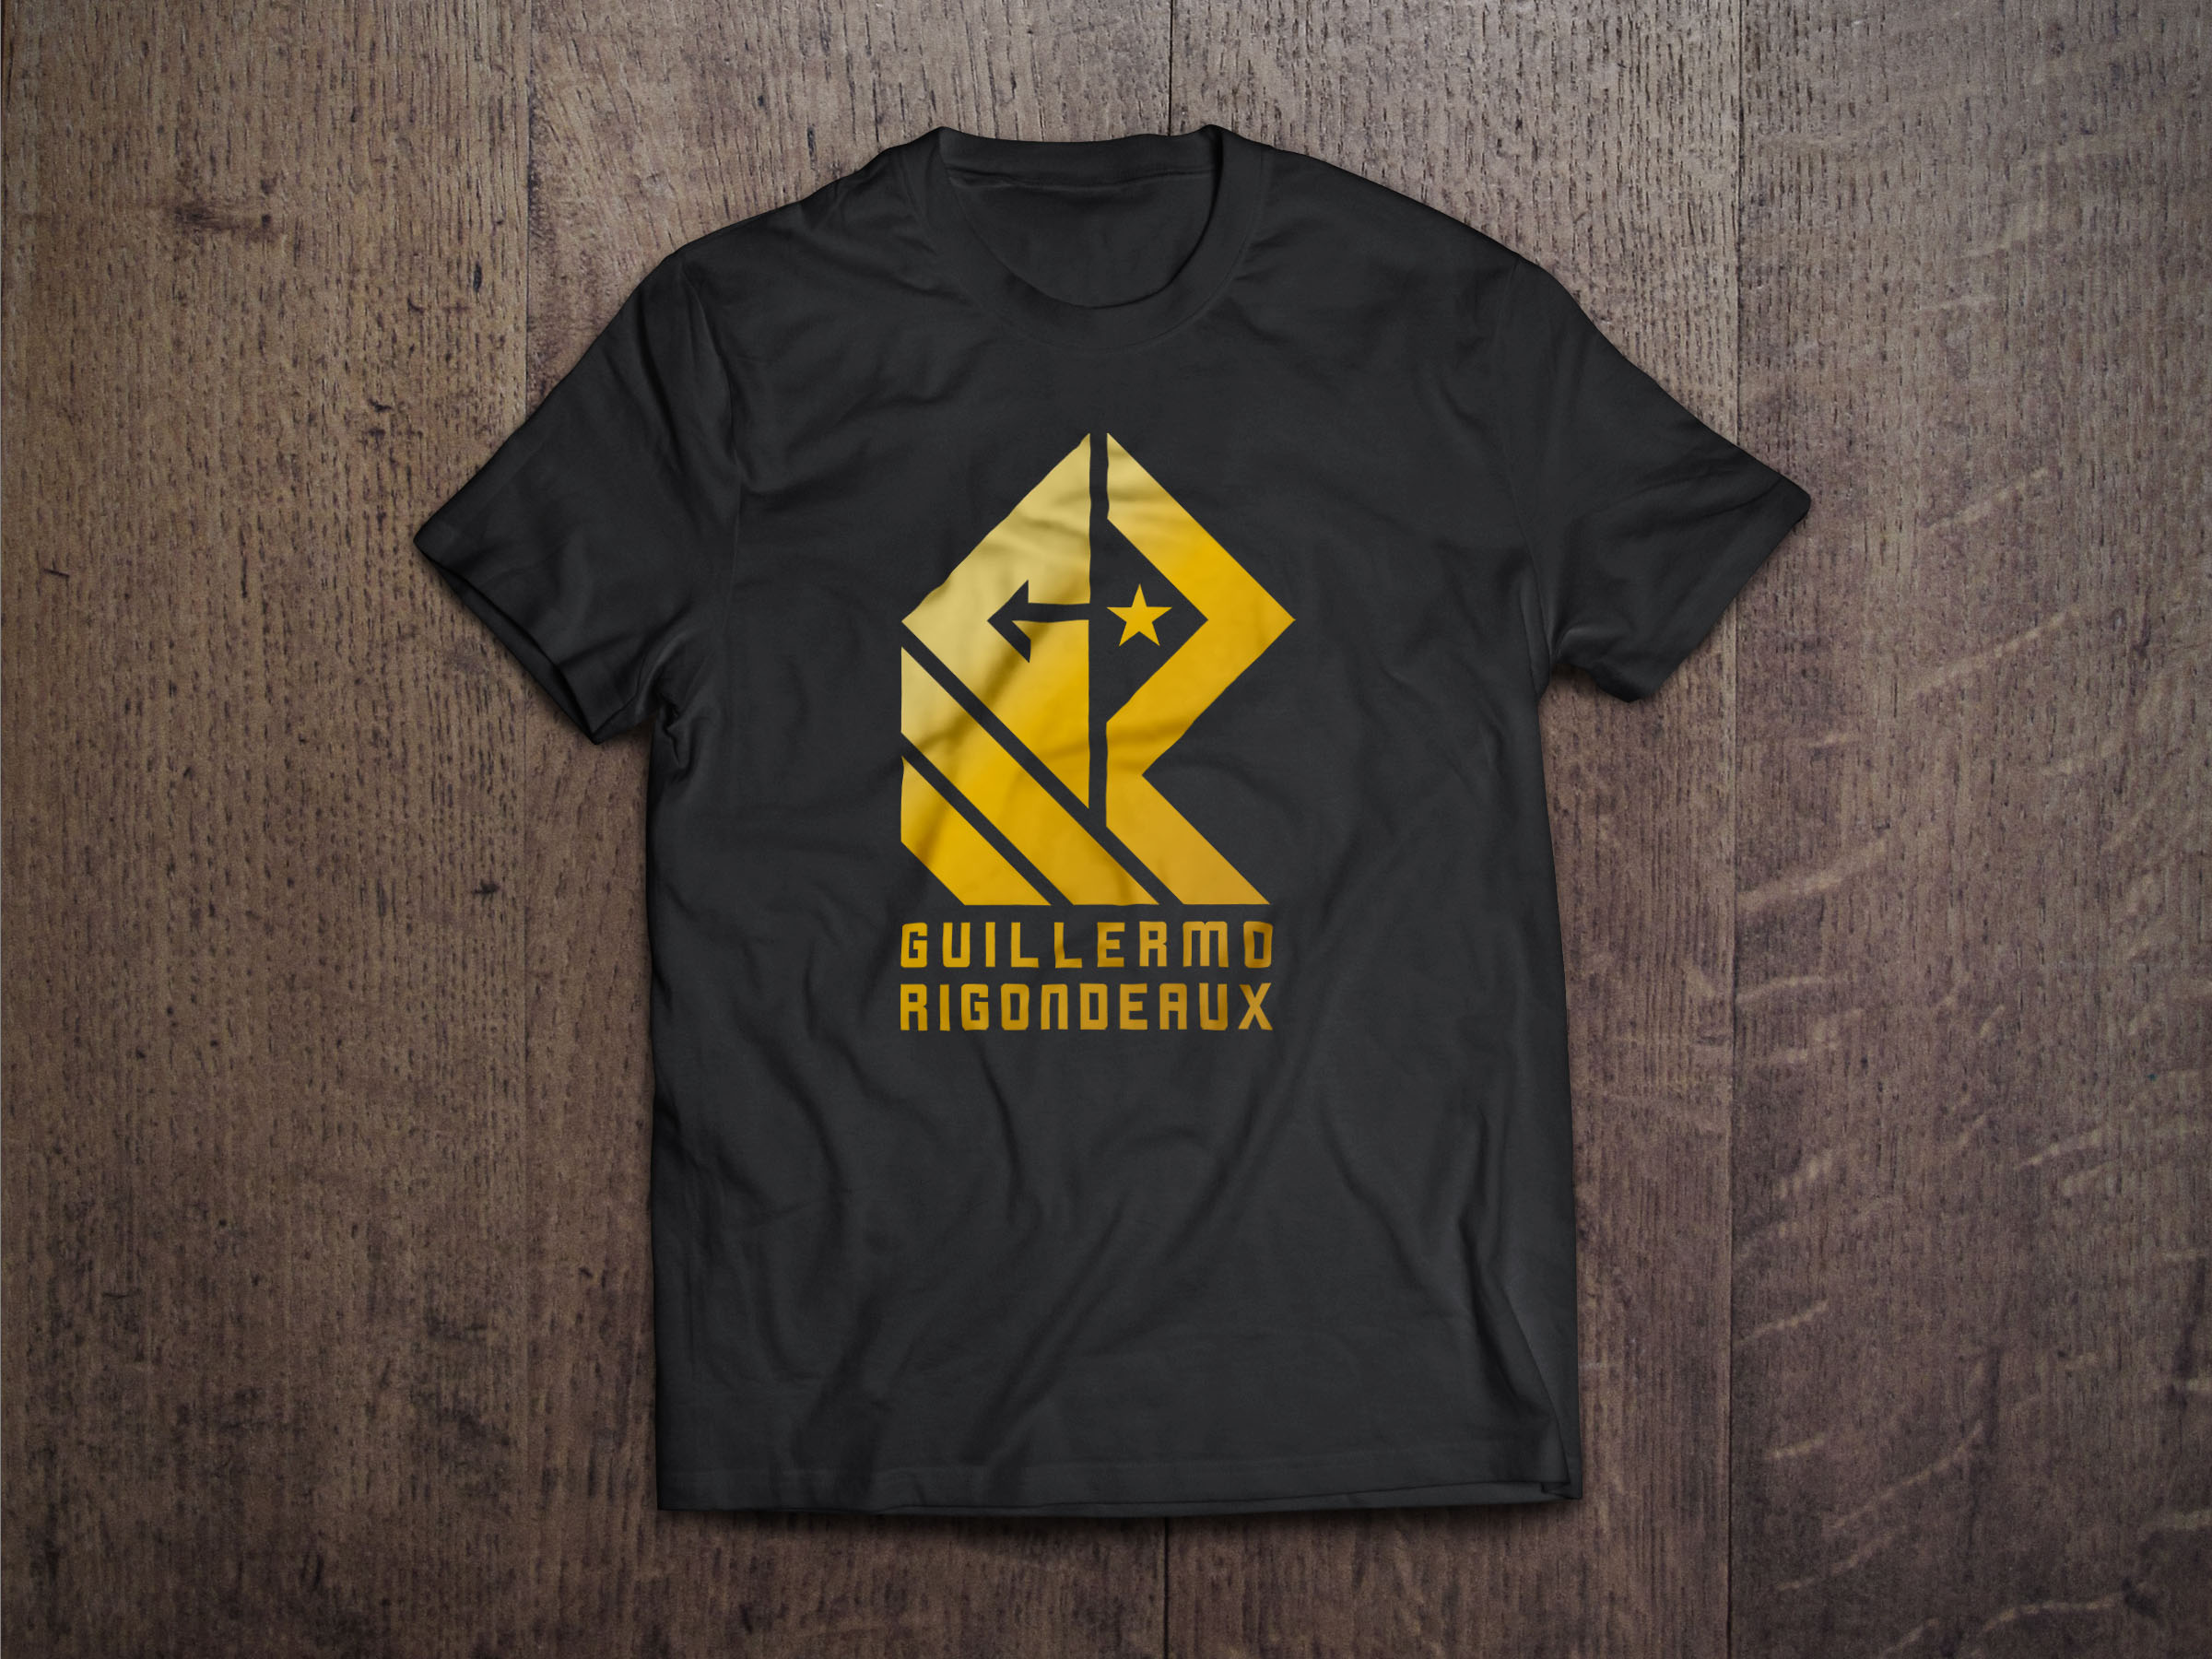 GR apparel design for rocnation world champion boxer